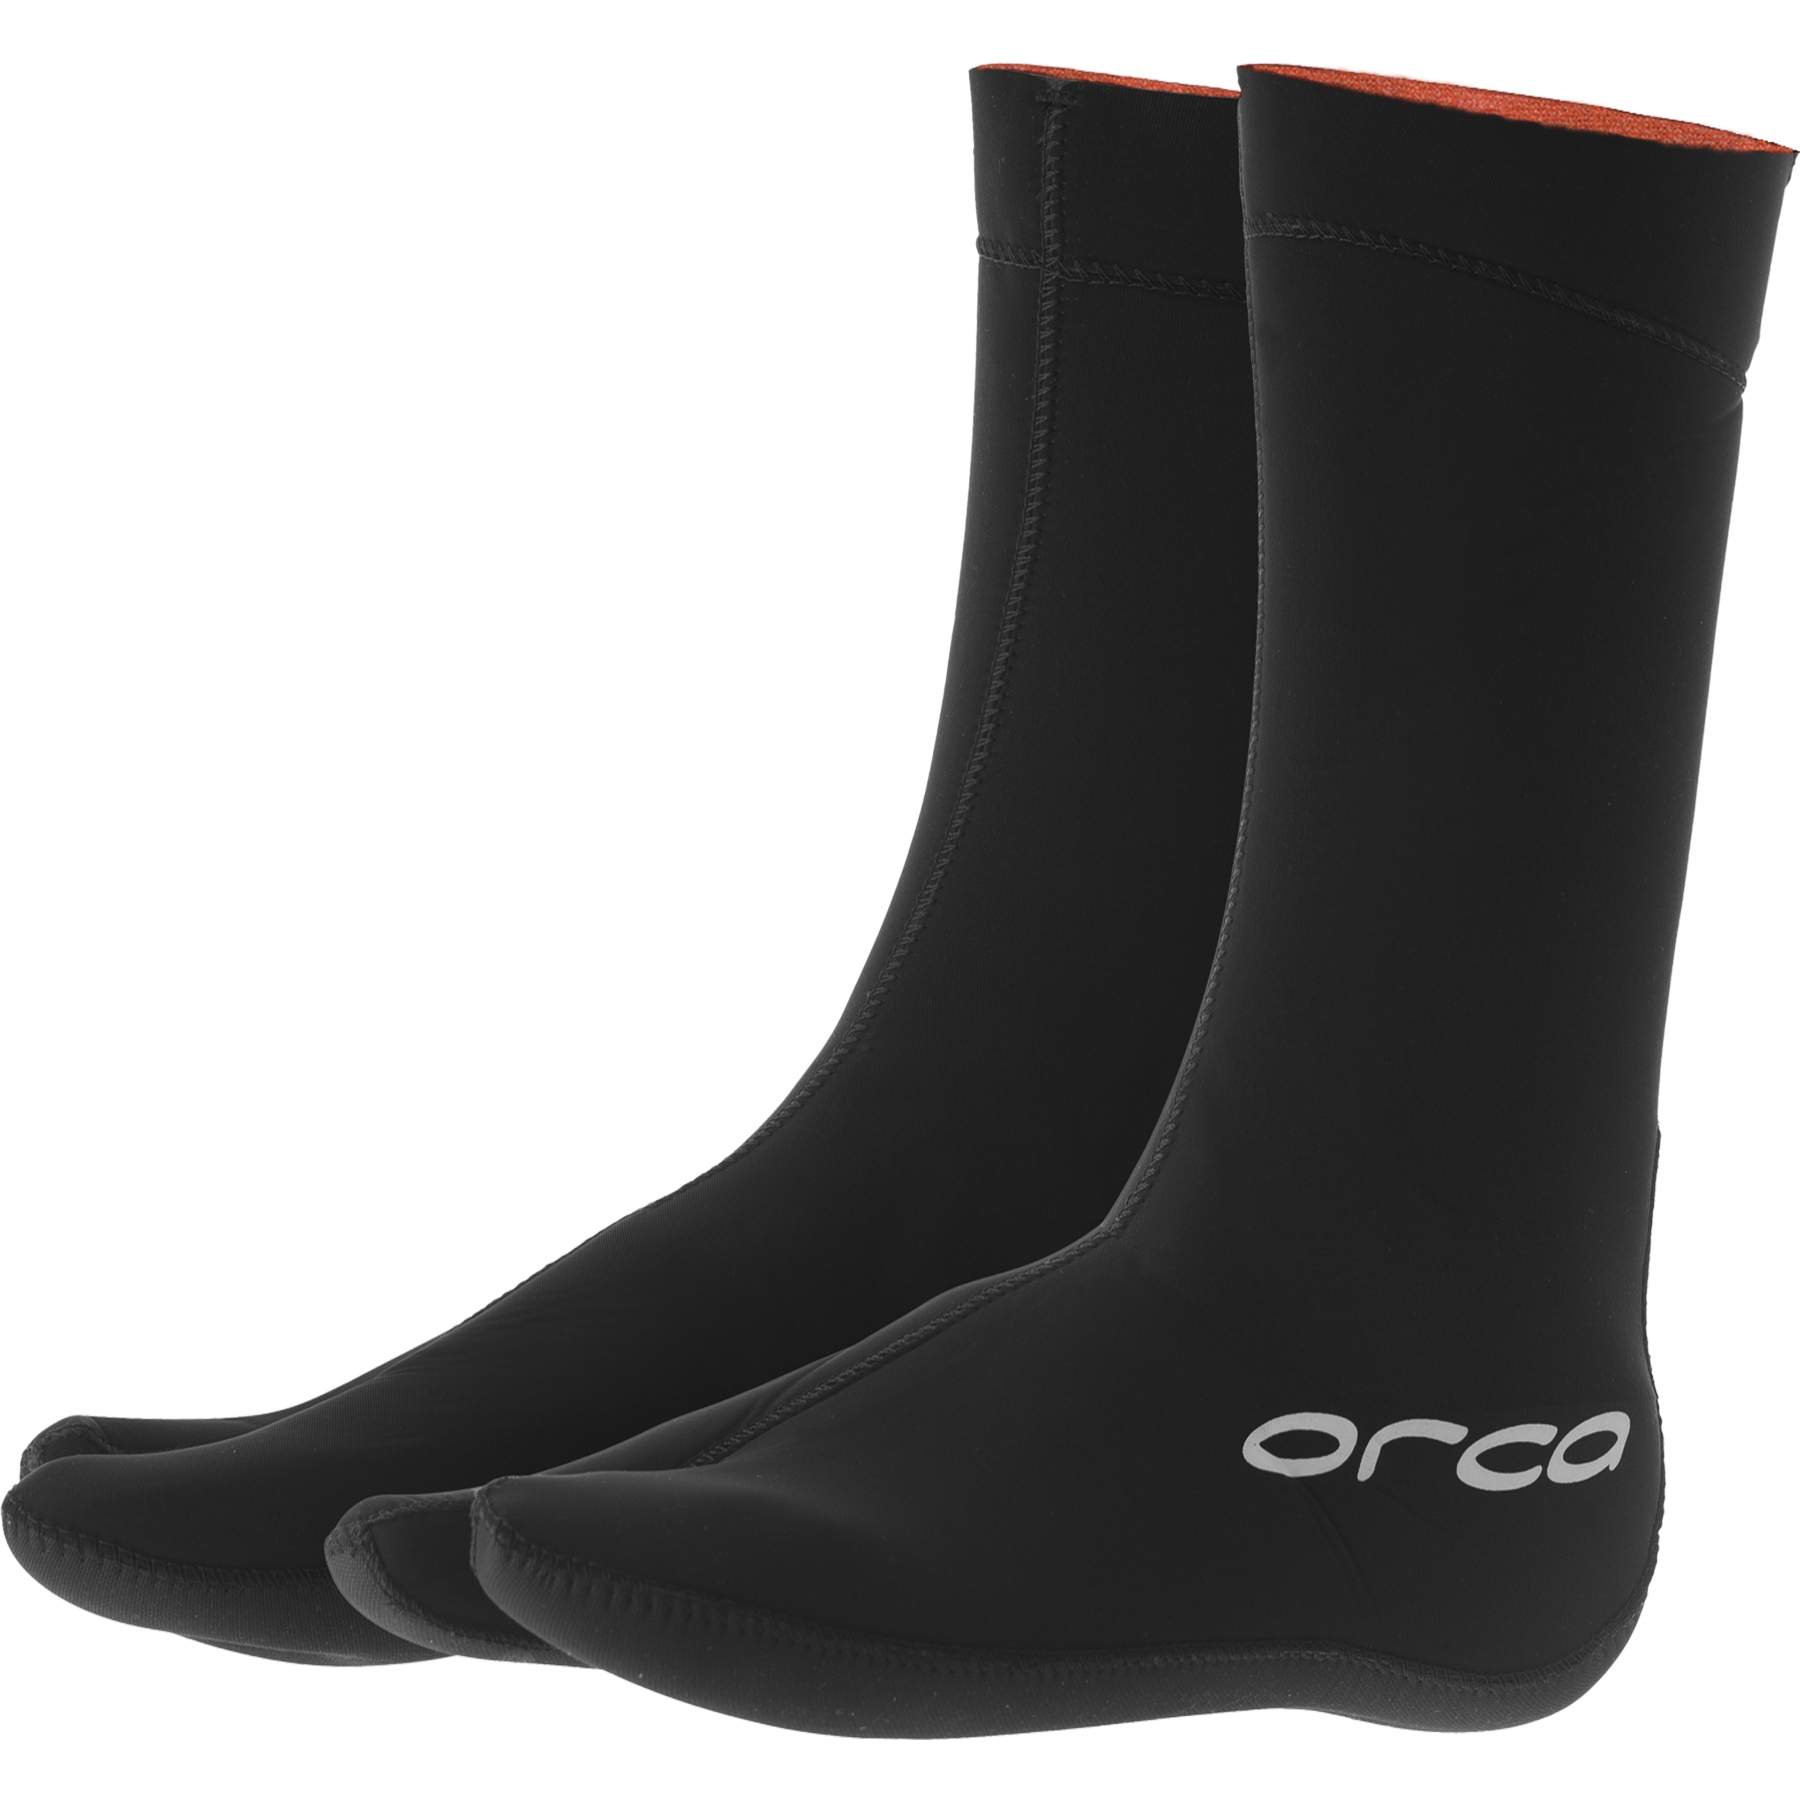 Produktbild von Orca Openwater Hydro Booties Neopren-Stiefel - schwarz MA46